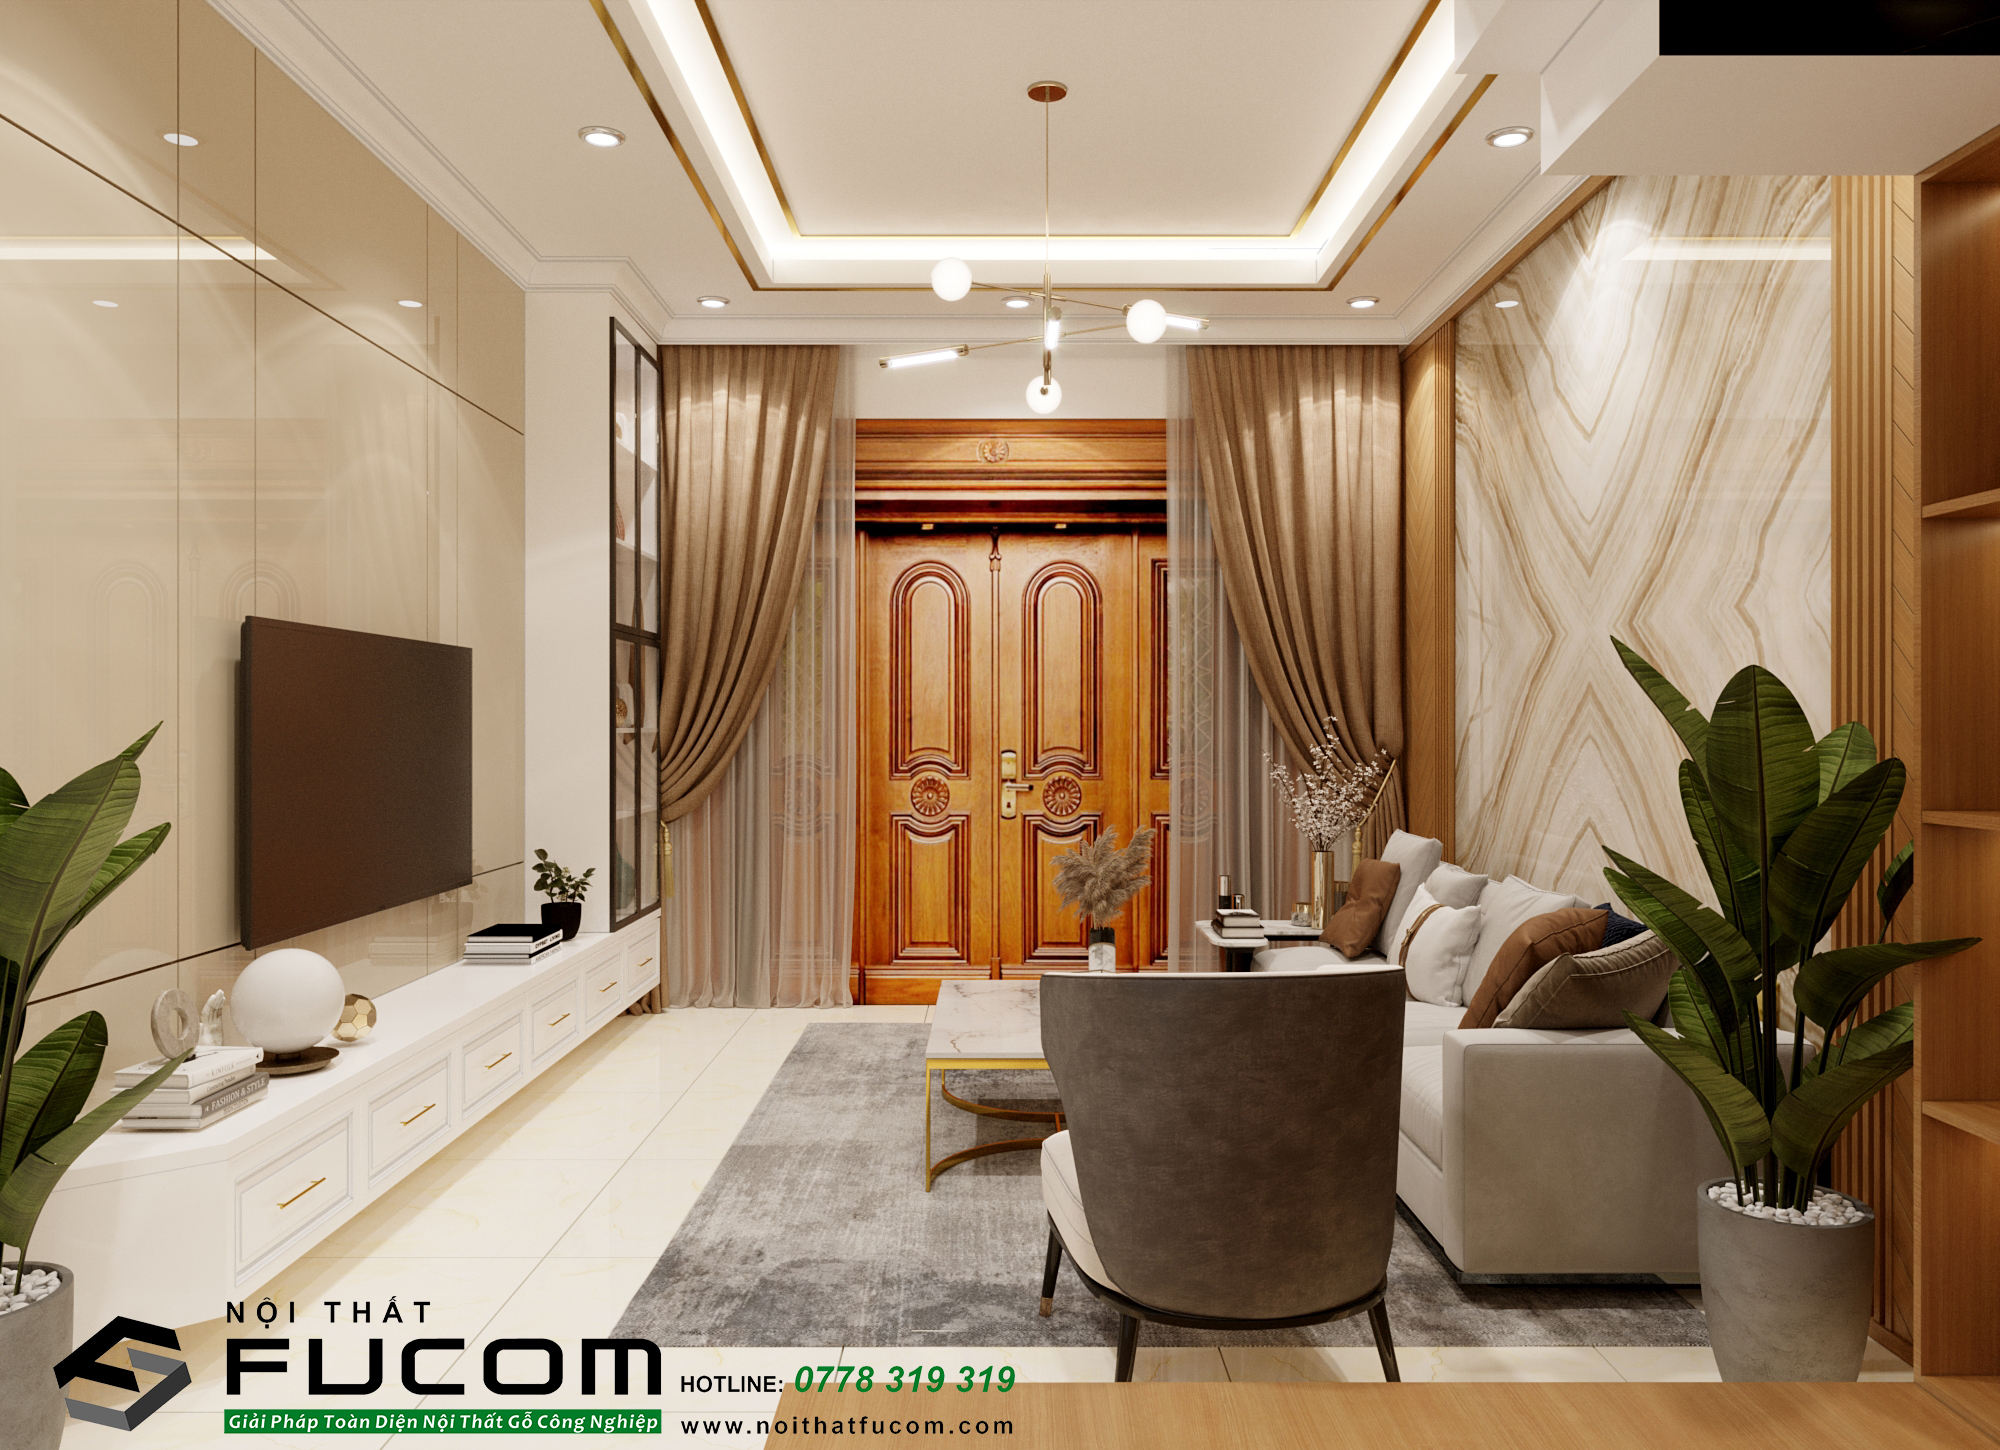 Phòng khách có các chi tiết inox mạ vàng tạo điểm nhấn sang trọng và xuyên suốt cho toàn bộ không gian